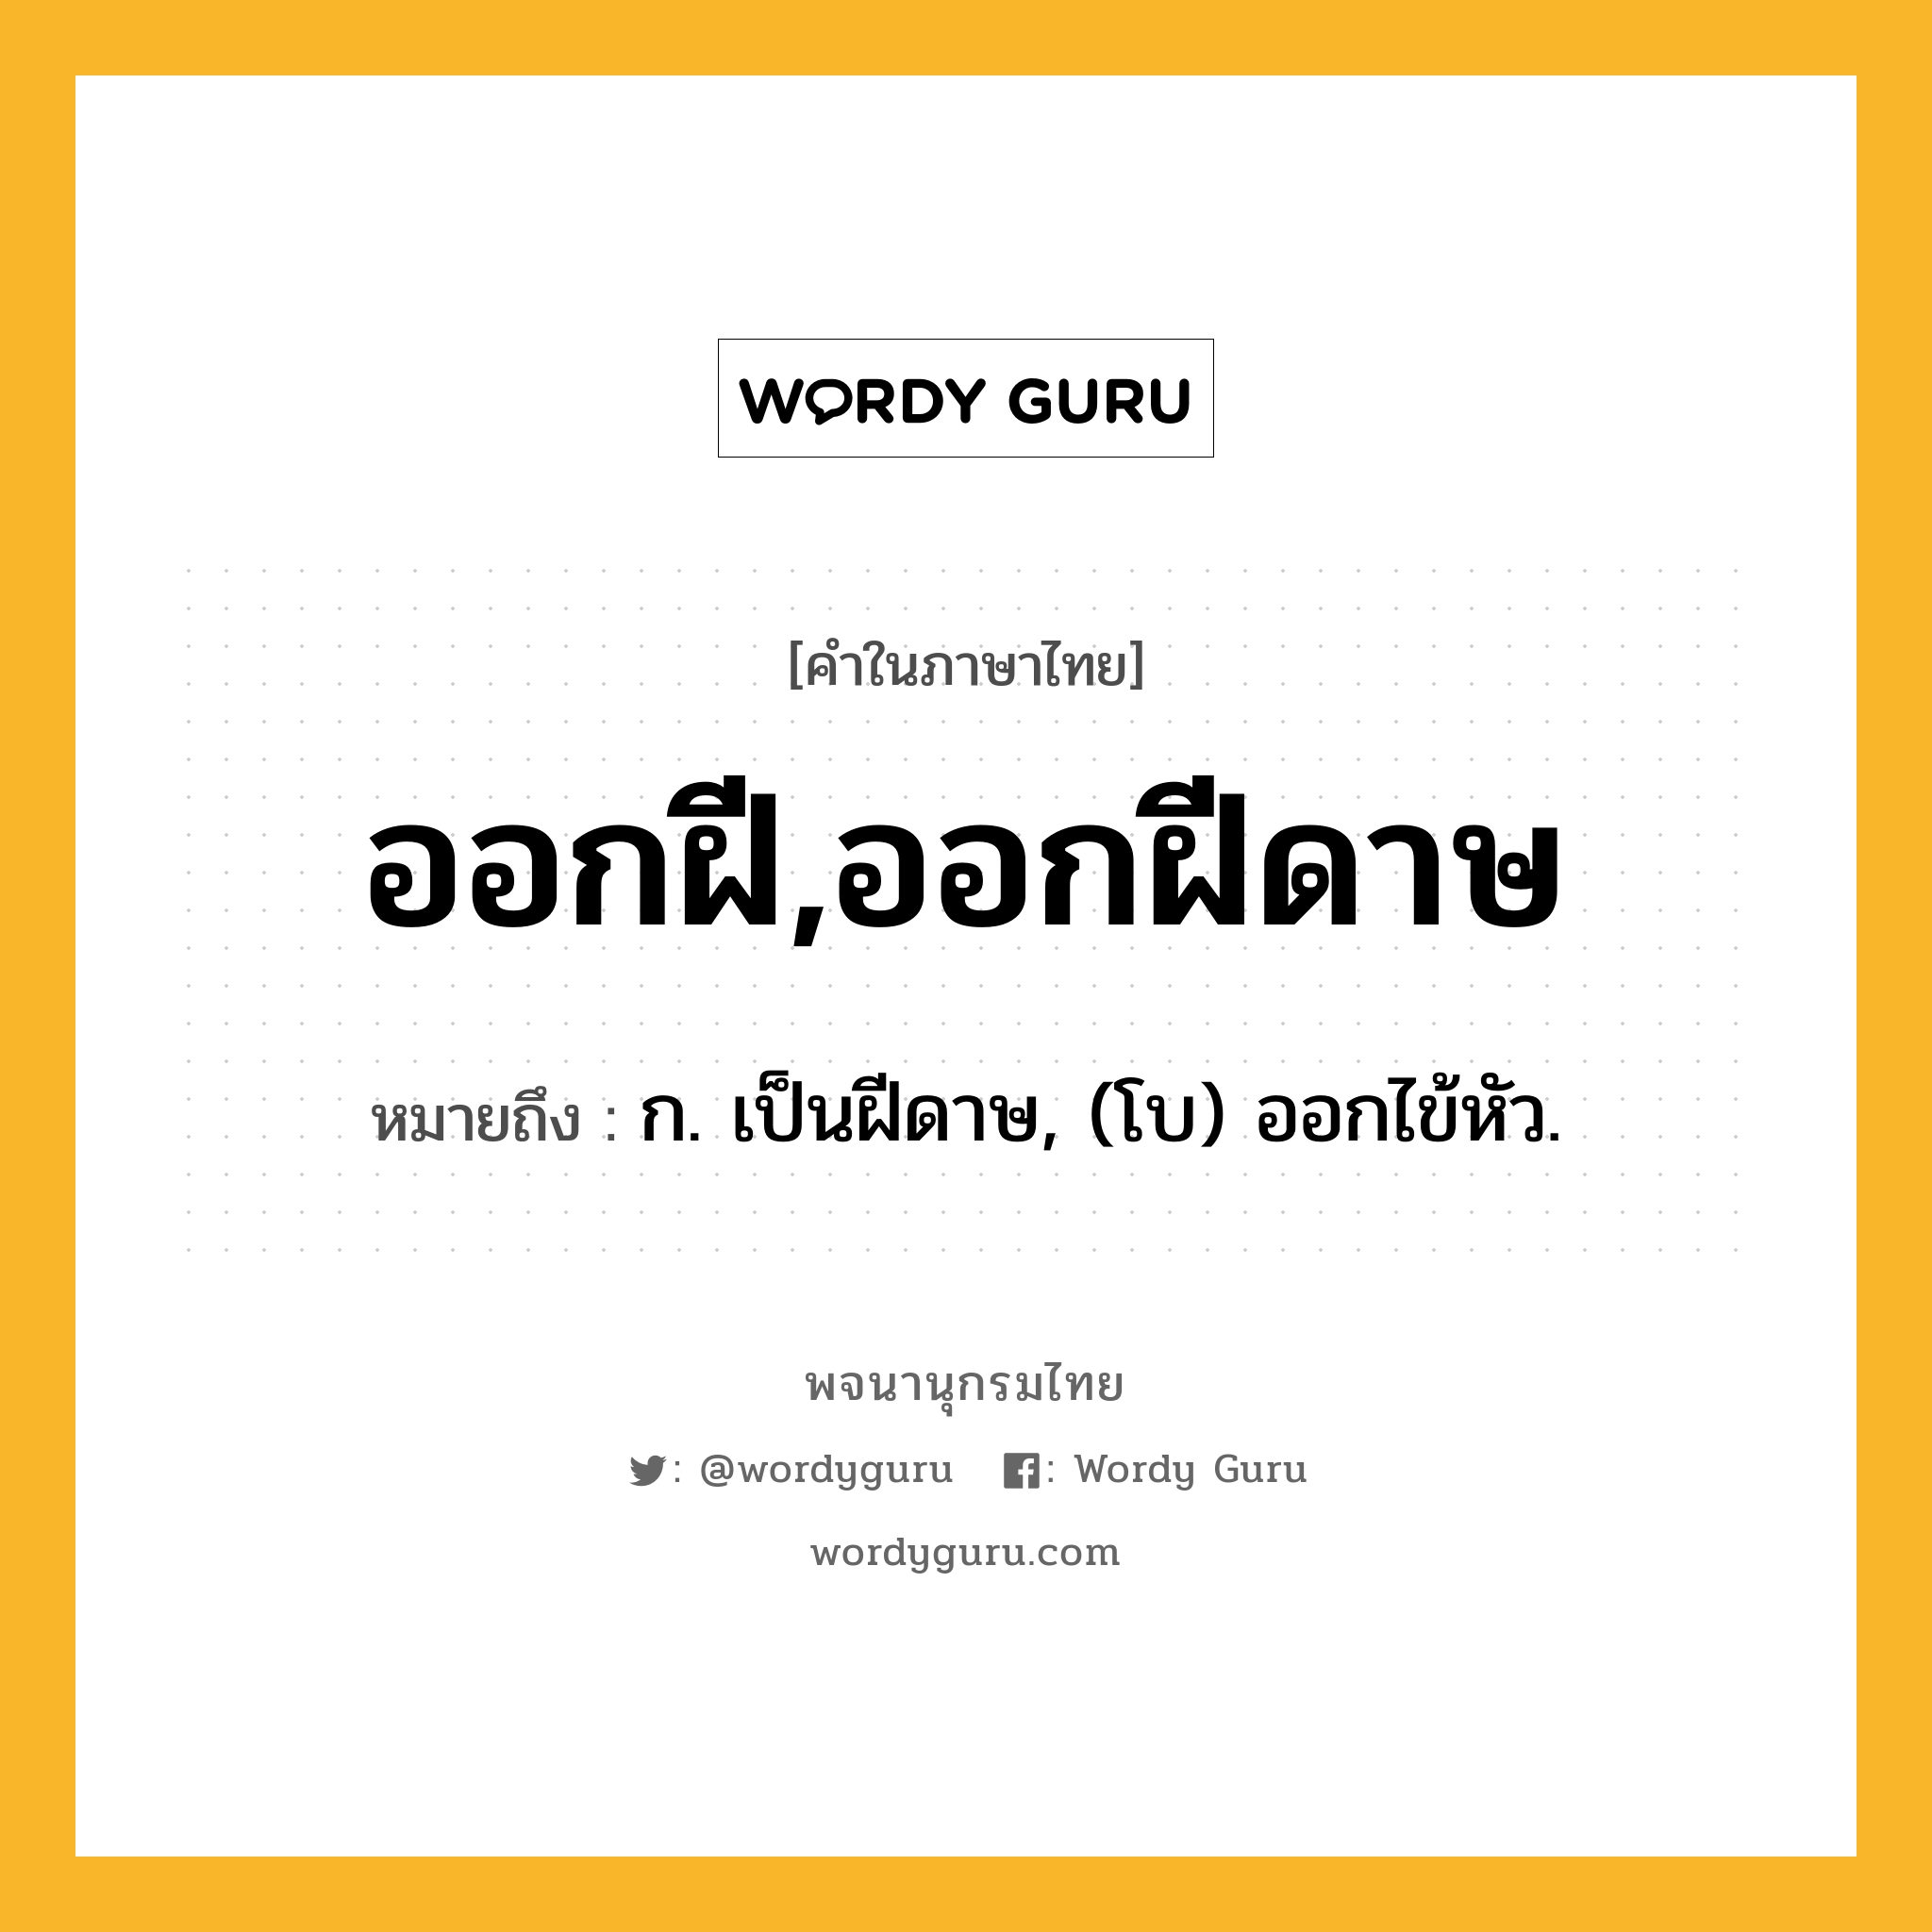 ออกฝี,ออกฝีดาษ ความหมาย หมายถึงอะไร?, คำในภาษาไทย ออกฝี,ออกฝีดาษ หมายถึง ก. เป็นฝีดาษ, (โบ) ออกไข้หัว.